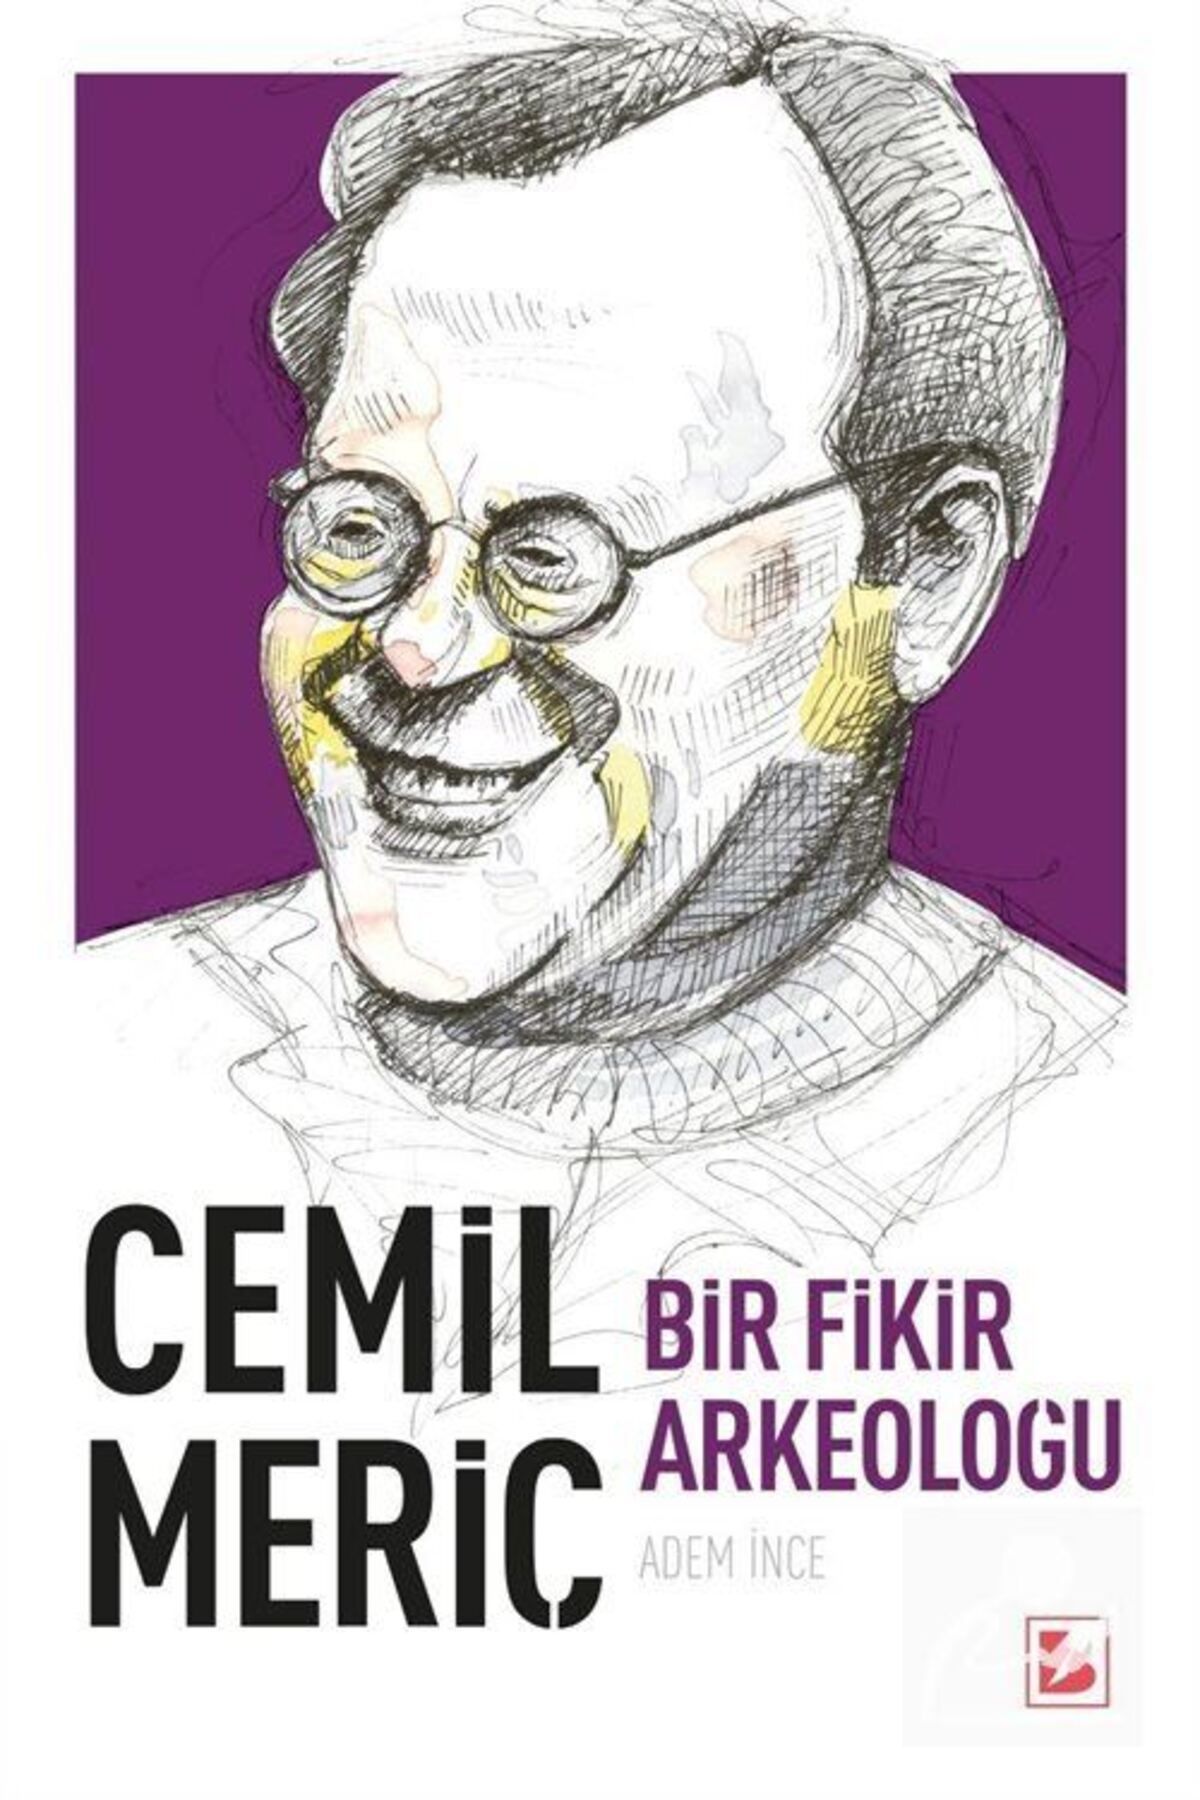 Bİr yayıncılık Cemil Meriç & Bir Fikir Arkeoloğu